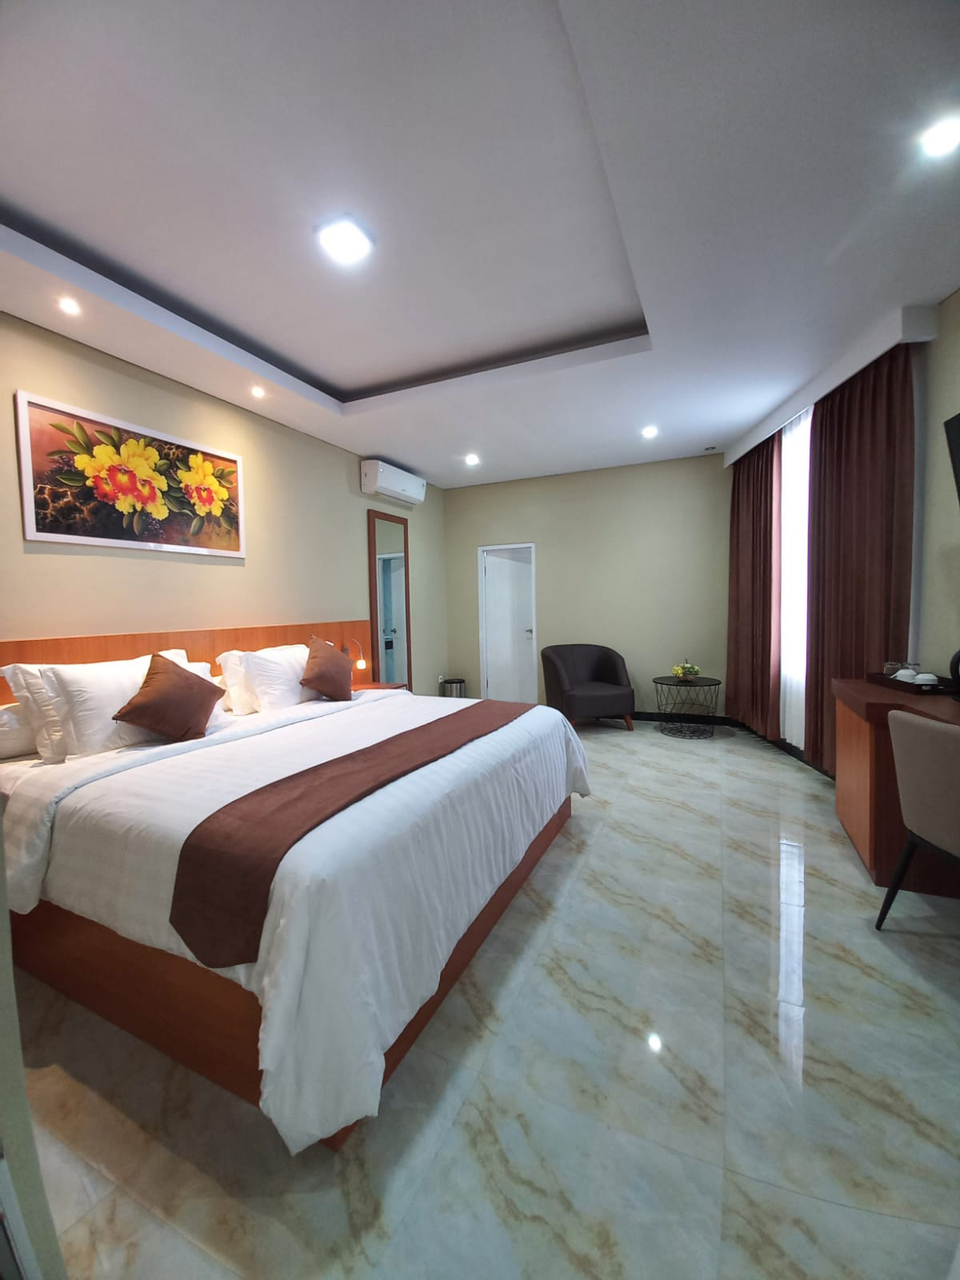 Bedroom 2, Grand Avira Hotel, Ambon